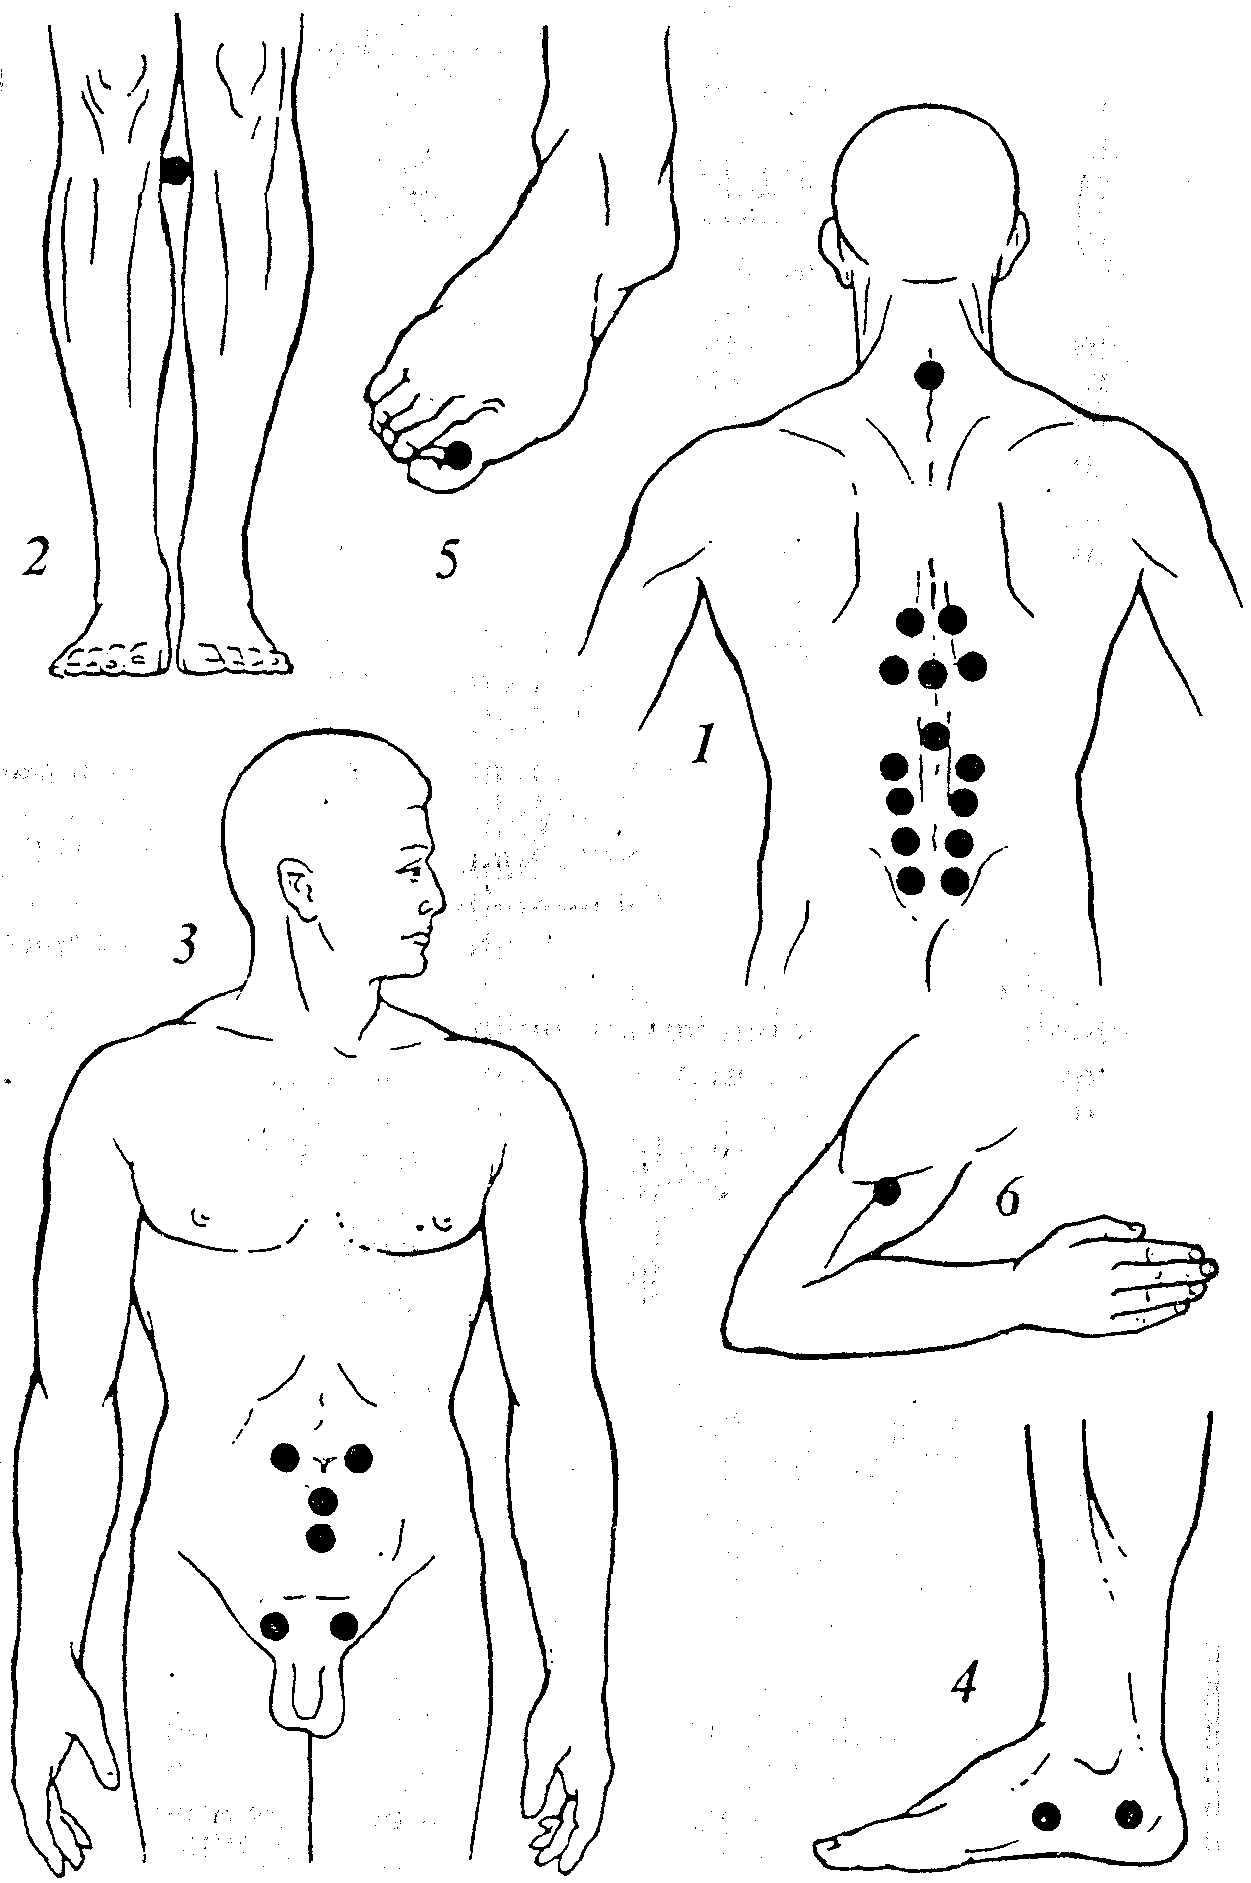 Рисунки показывают точки массажа для каждой болезни. 